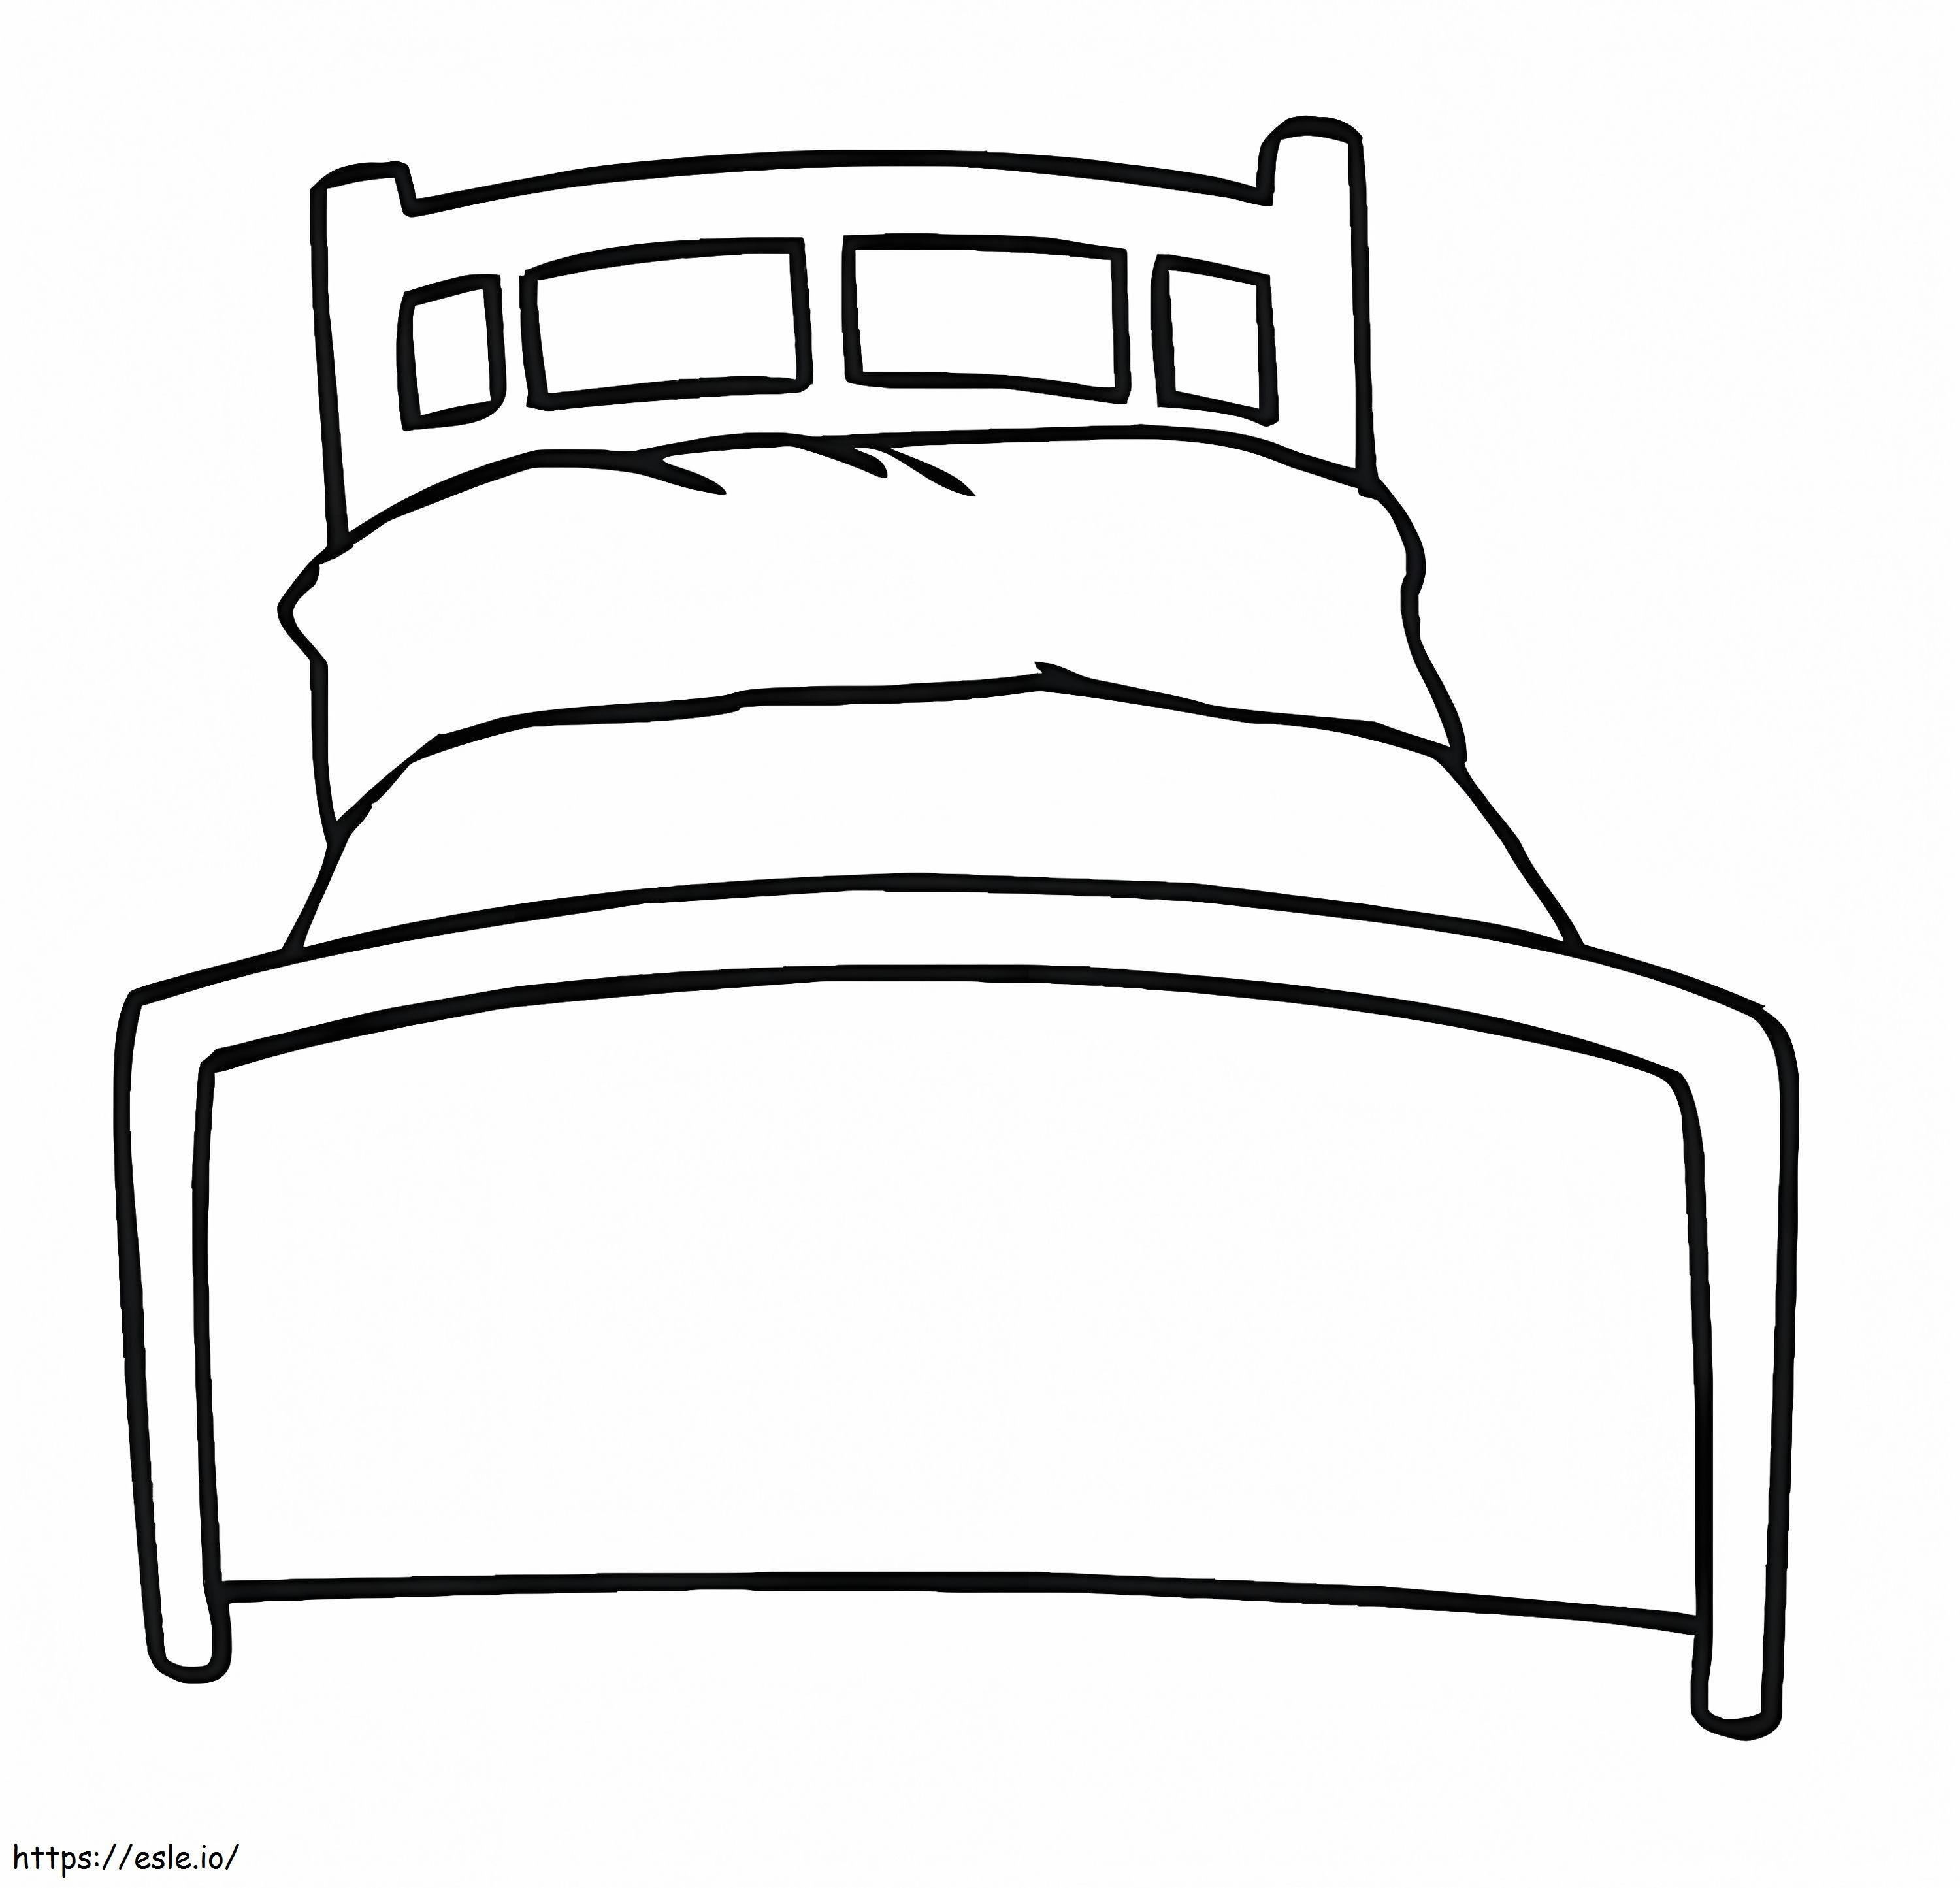 Łatwe łóżko do wydrukowania kolorowanka